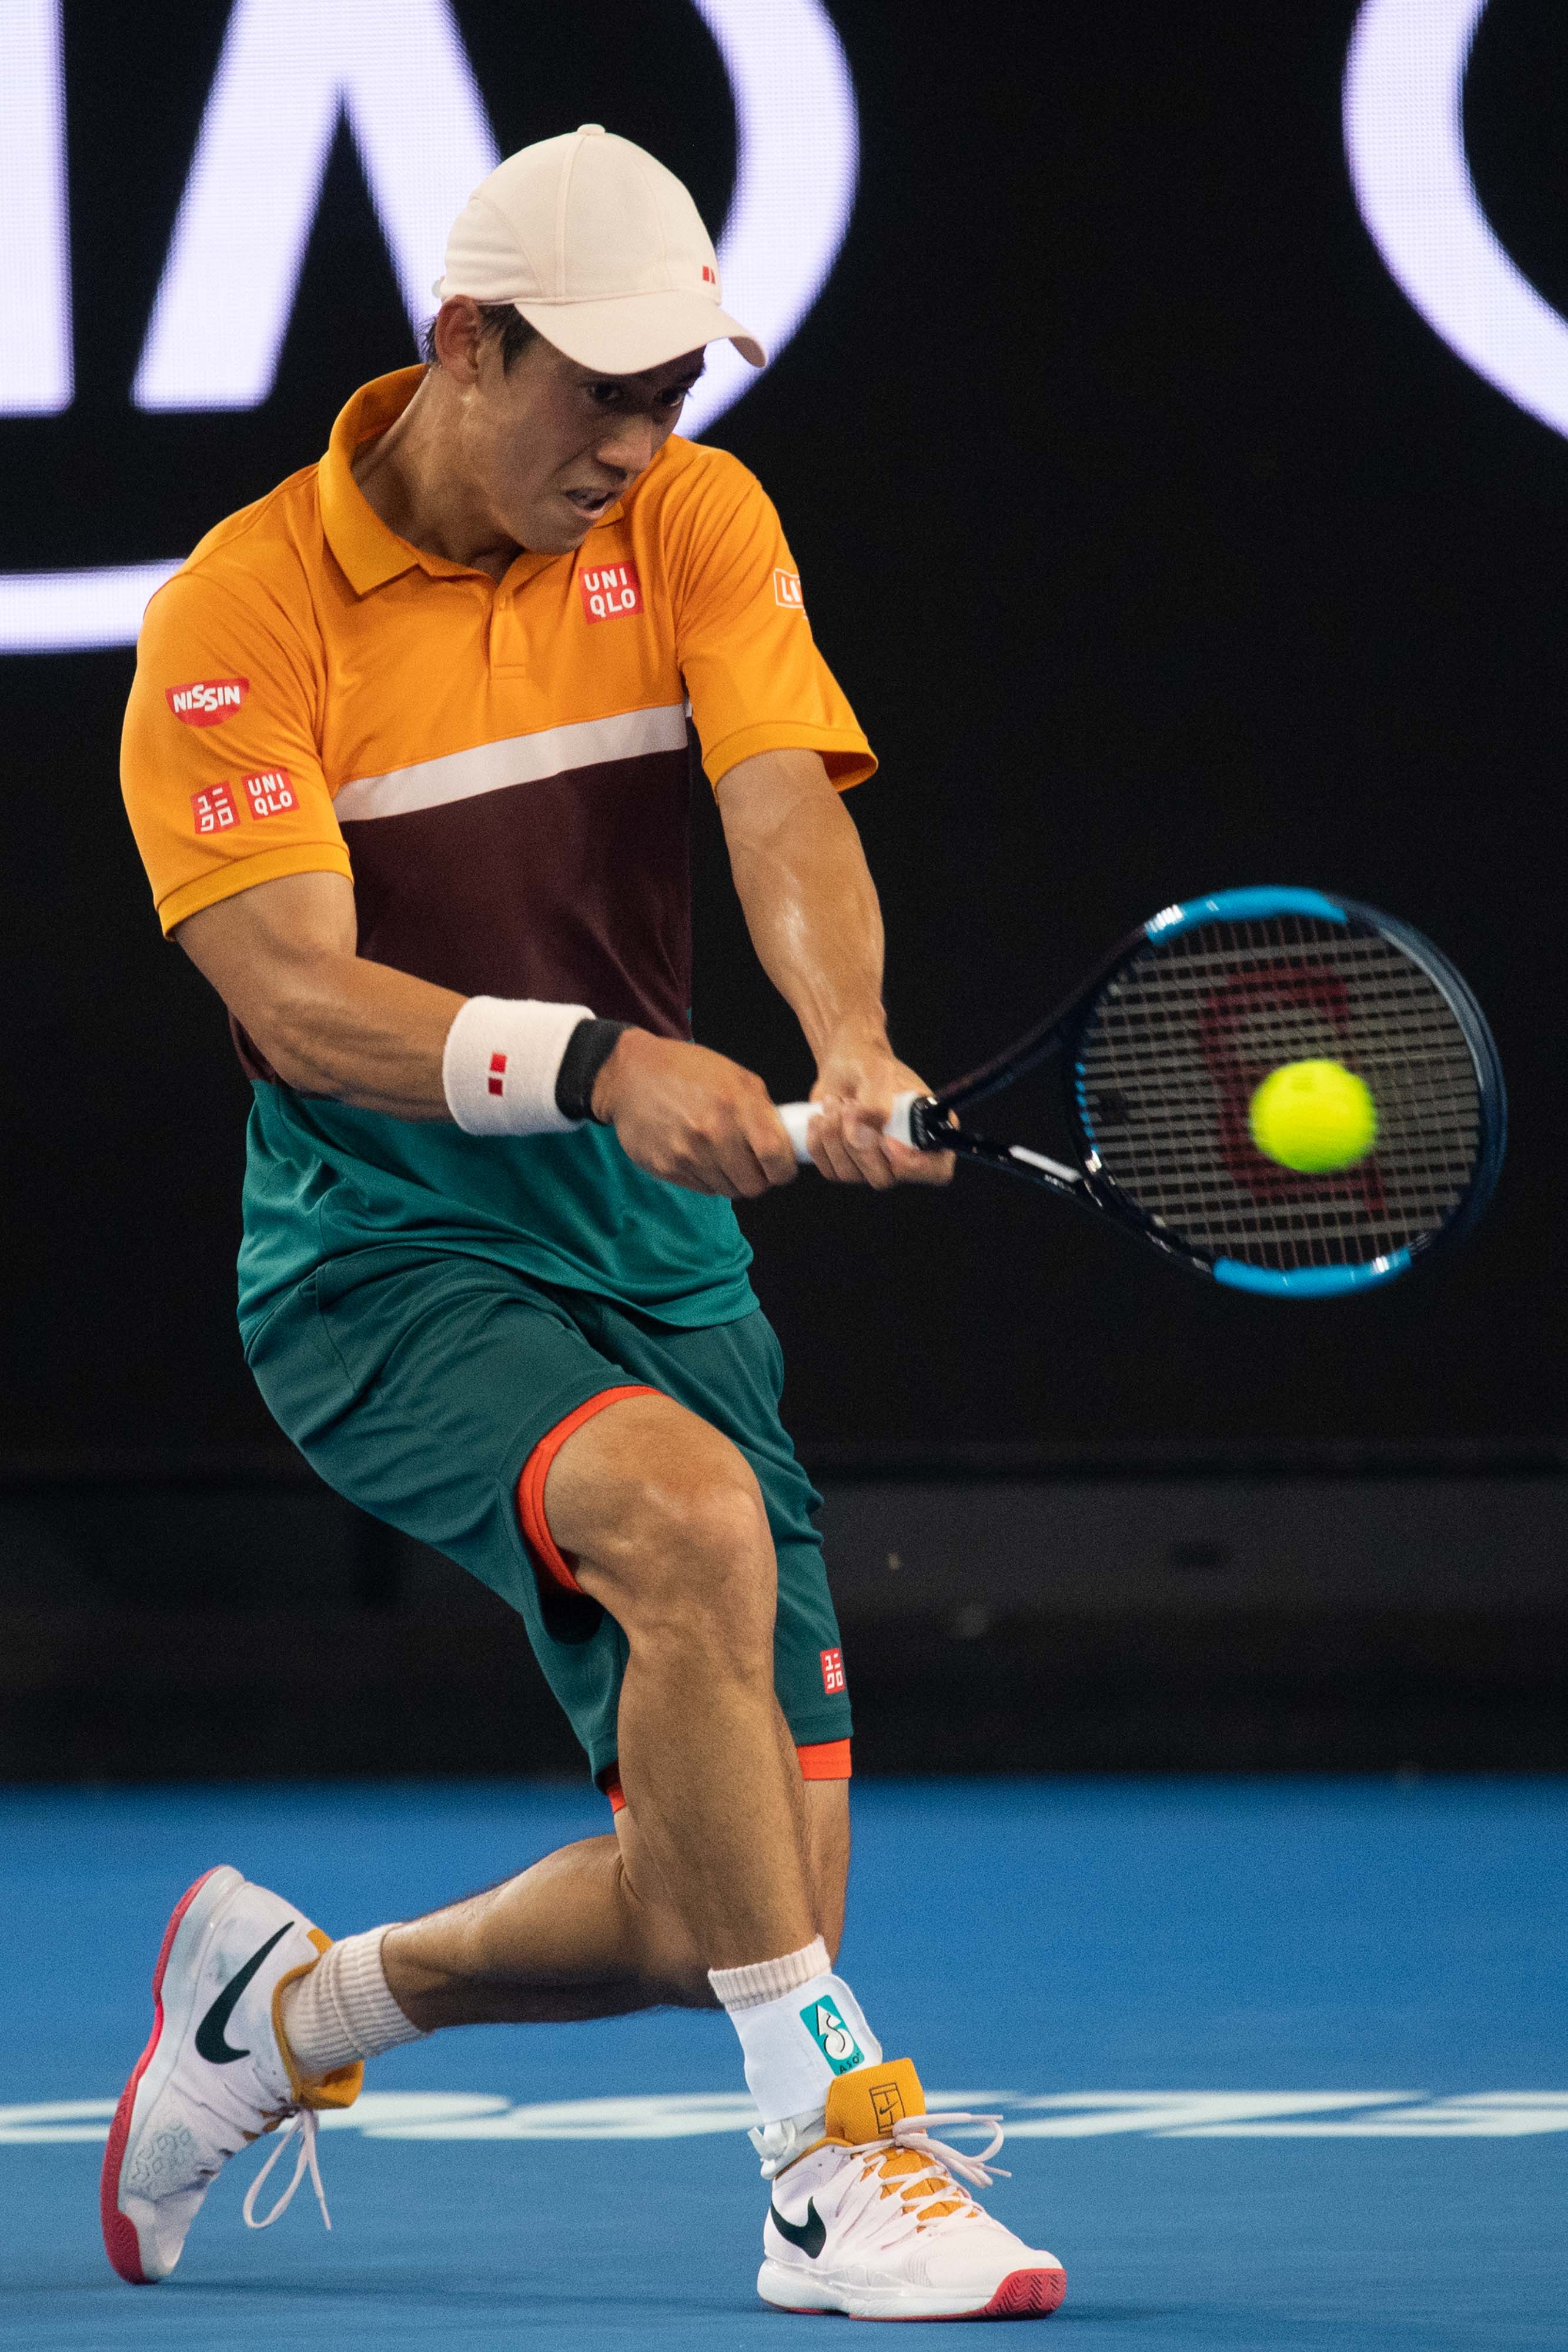 当日,在2019年澳大利亚网球公开赛男单第四轮的比赛中,日本选手锦织圭